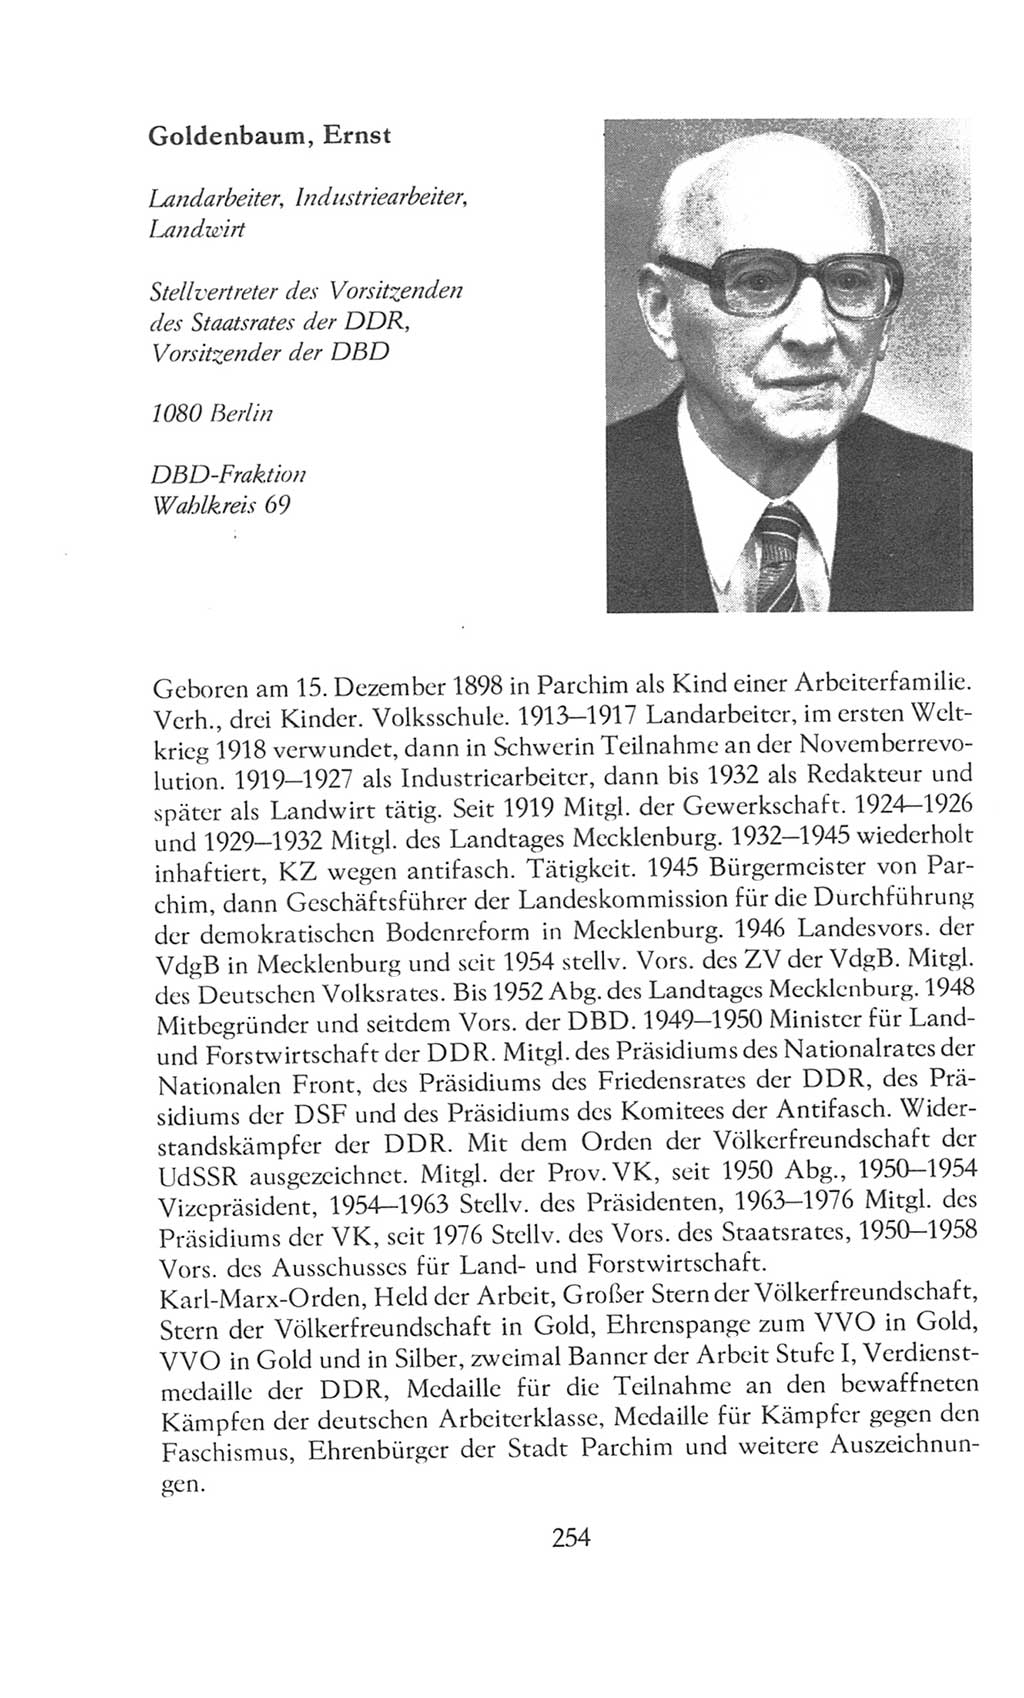 Volkskammer (VK) der Deutschen Demokratischen Republik (DDR), 8. Wahlperiode 1981-1986, Seite 254 (VK. DDR 8. WP. 1981-1986, S. 254)